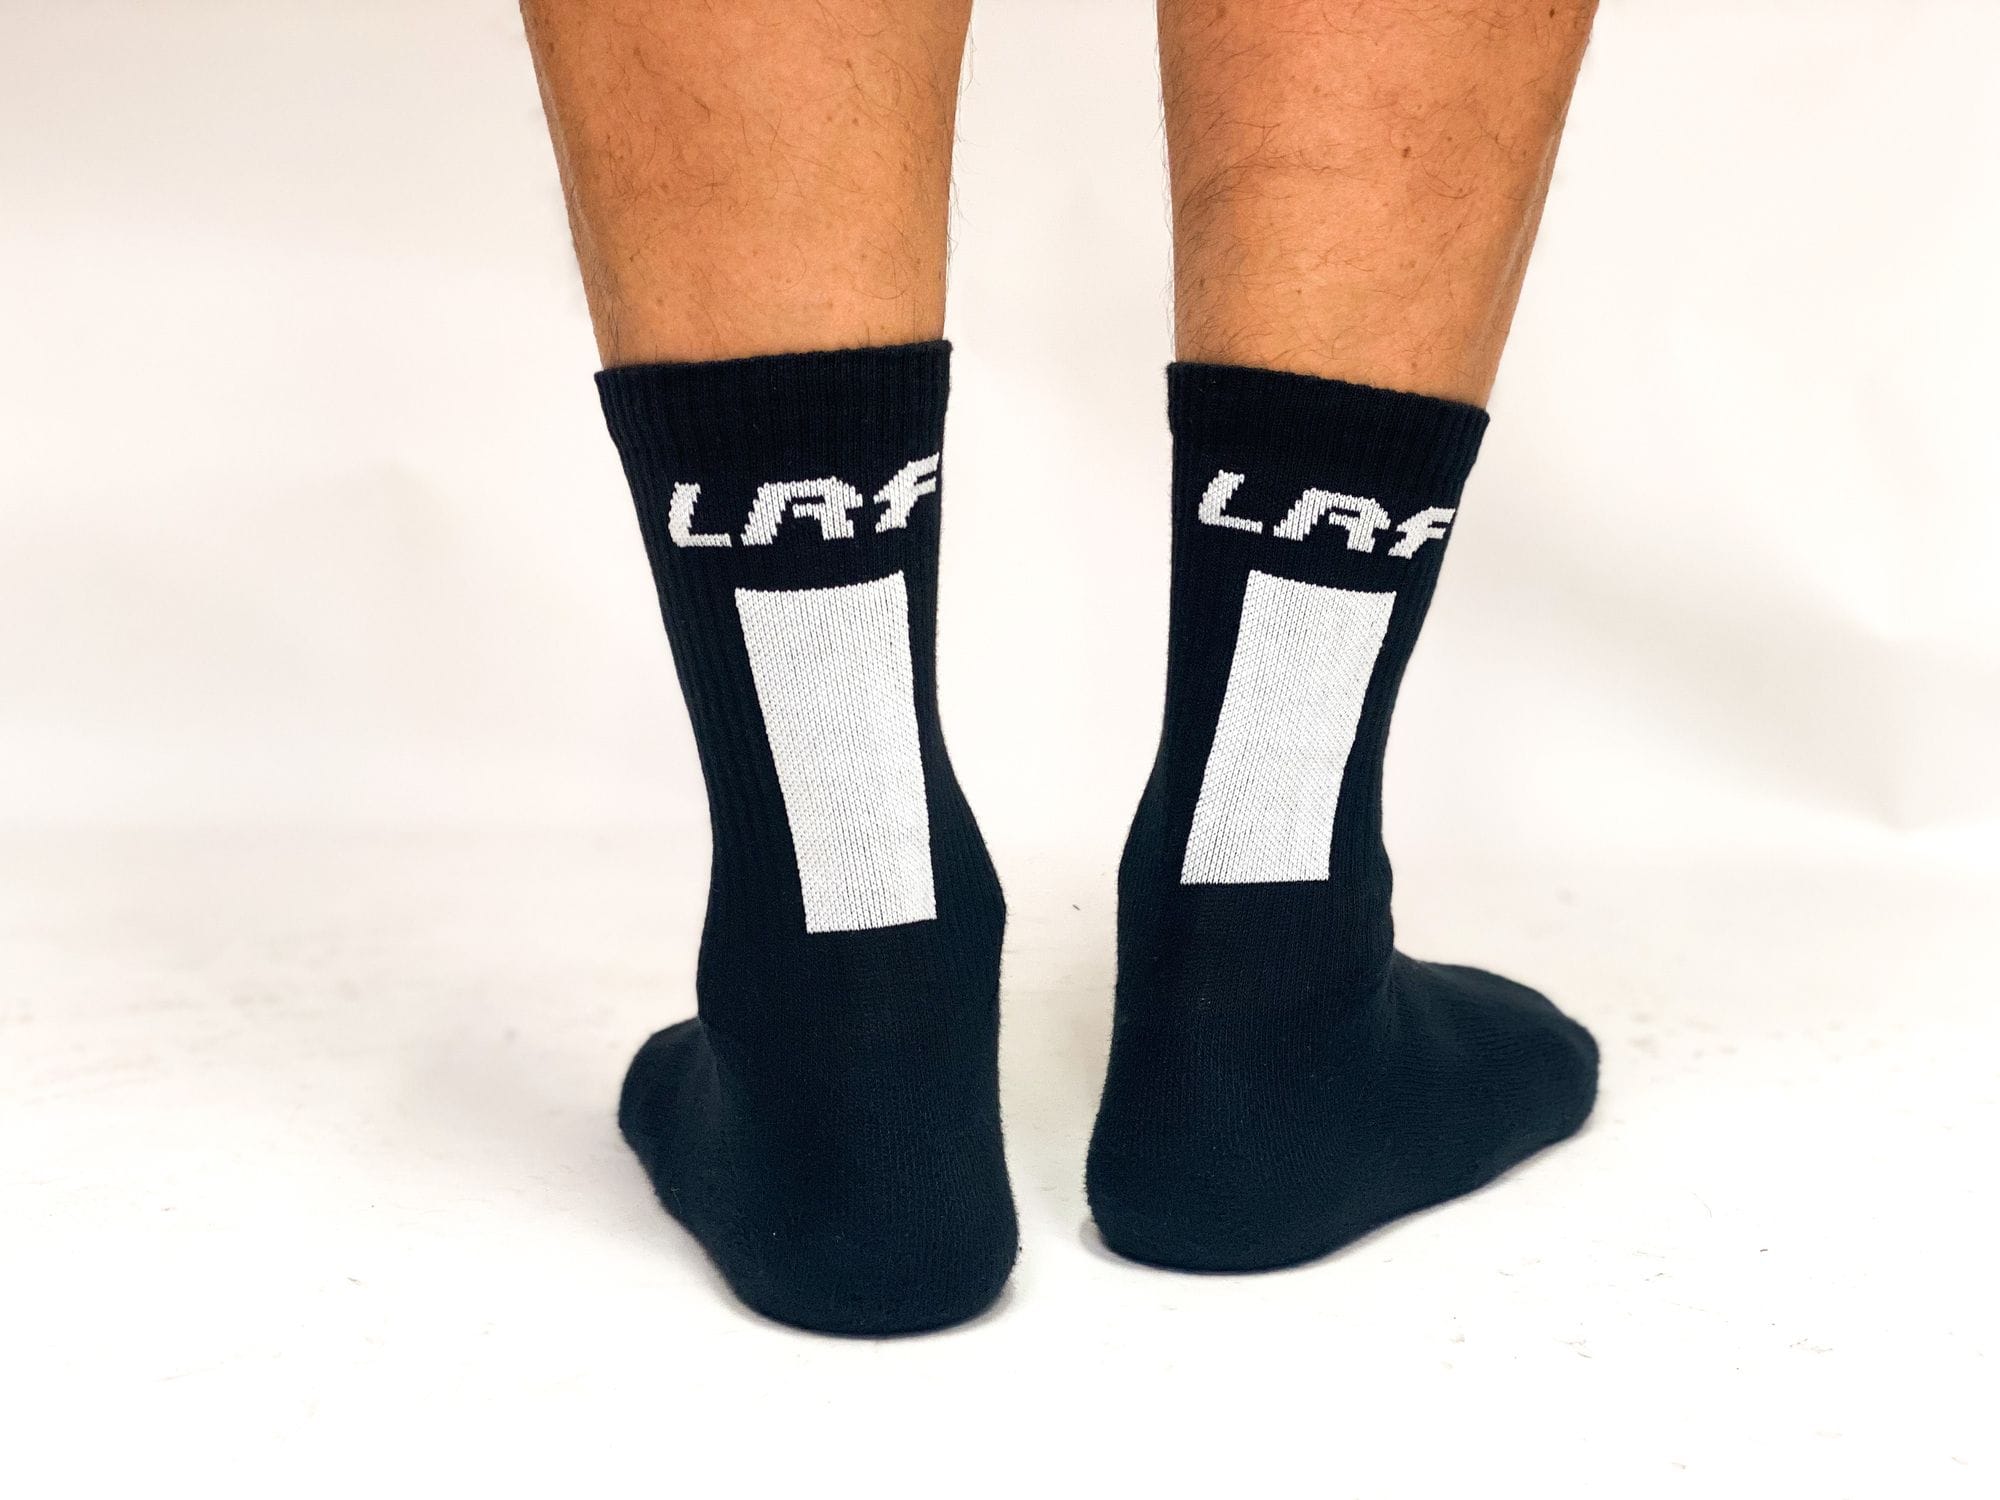 LRF Calf Sock Vertical print (black)